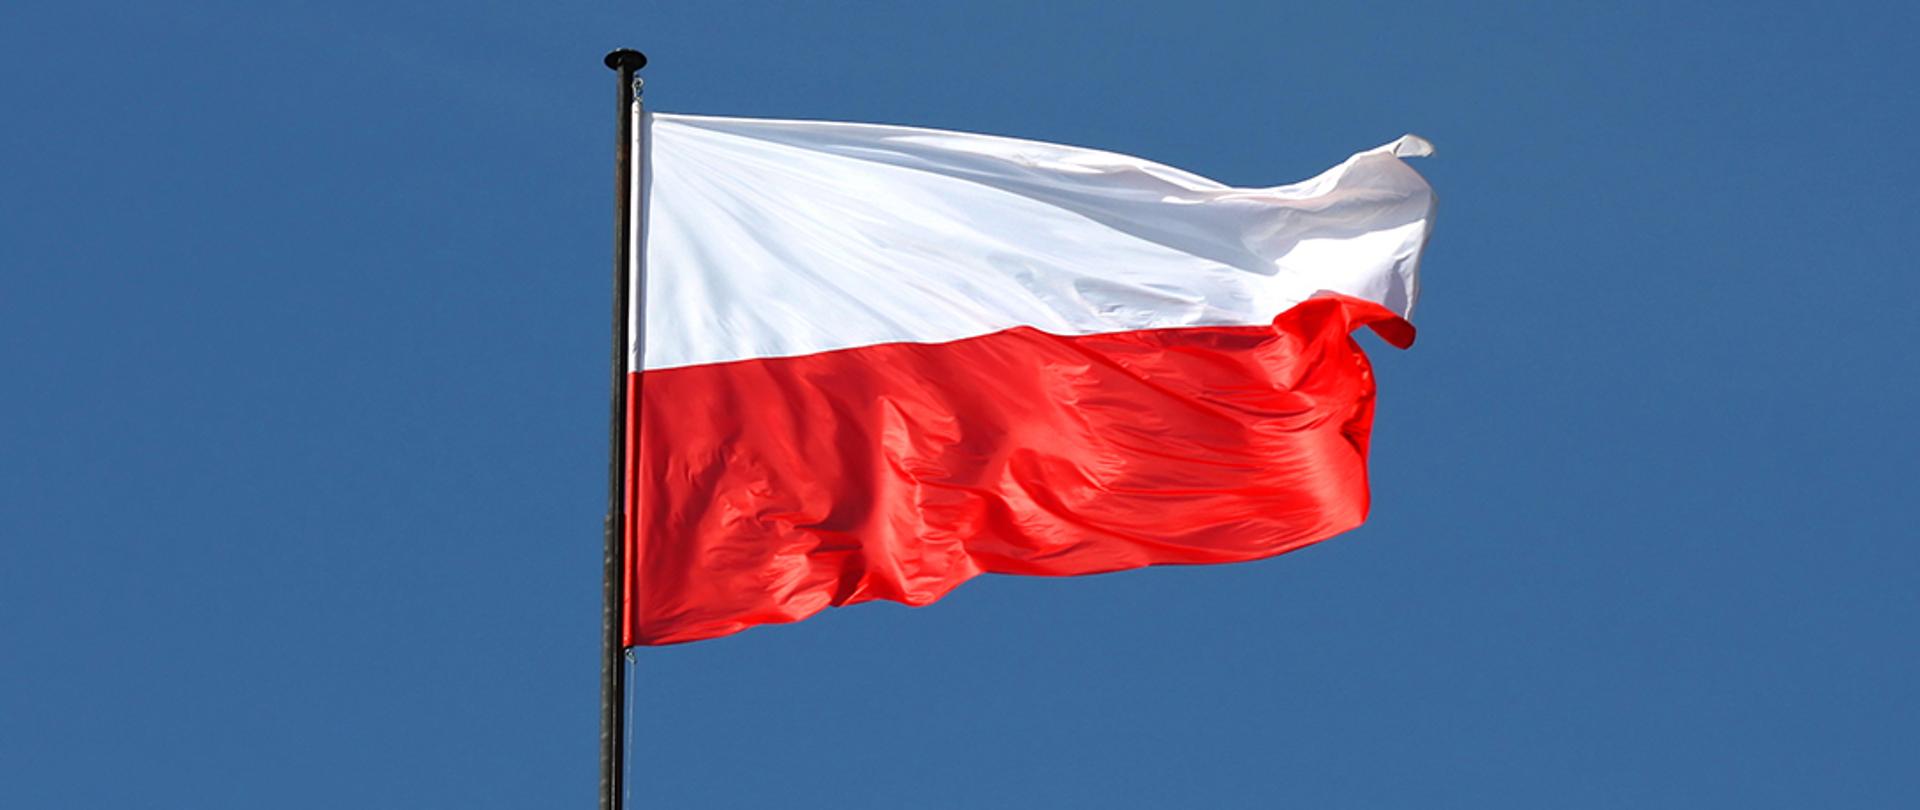 Biało-czerwona flaga Polski powiewająca na maszcie.